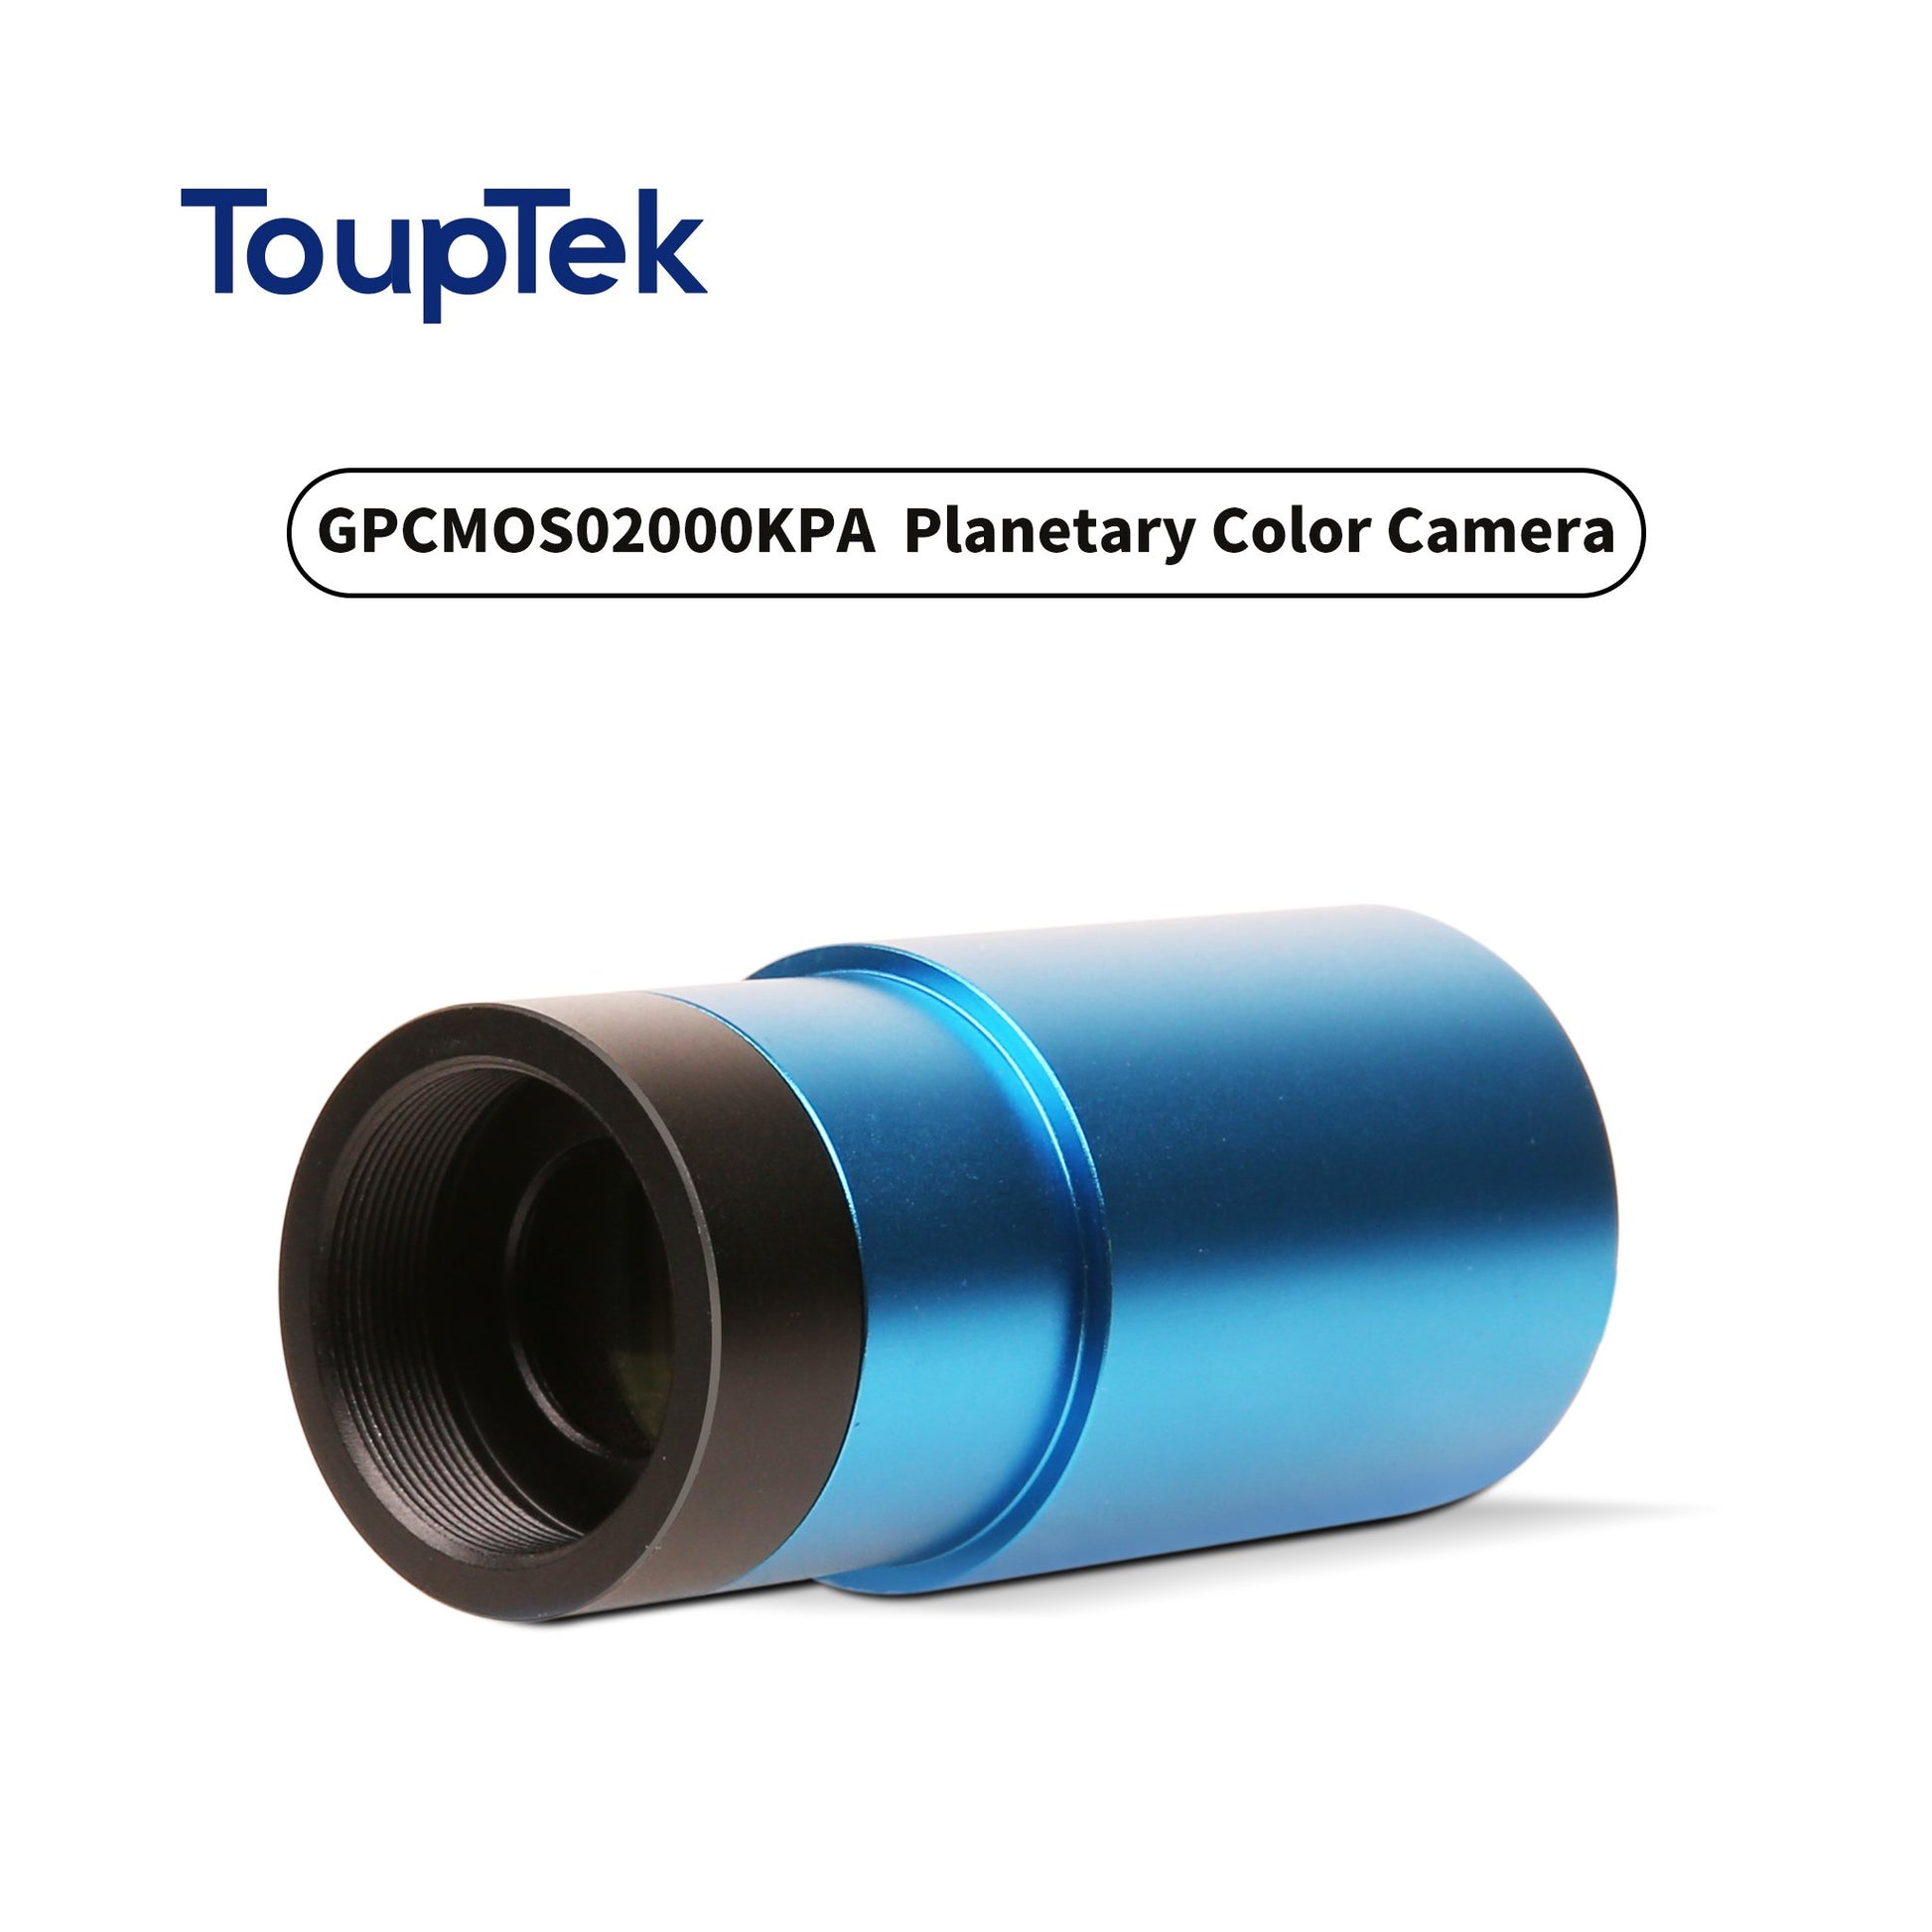 GPCMOS02000KPA Planetary Color Camera